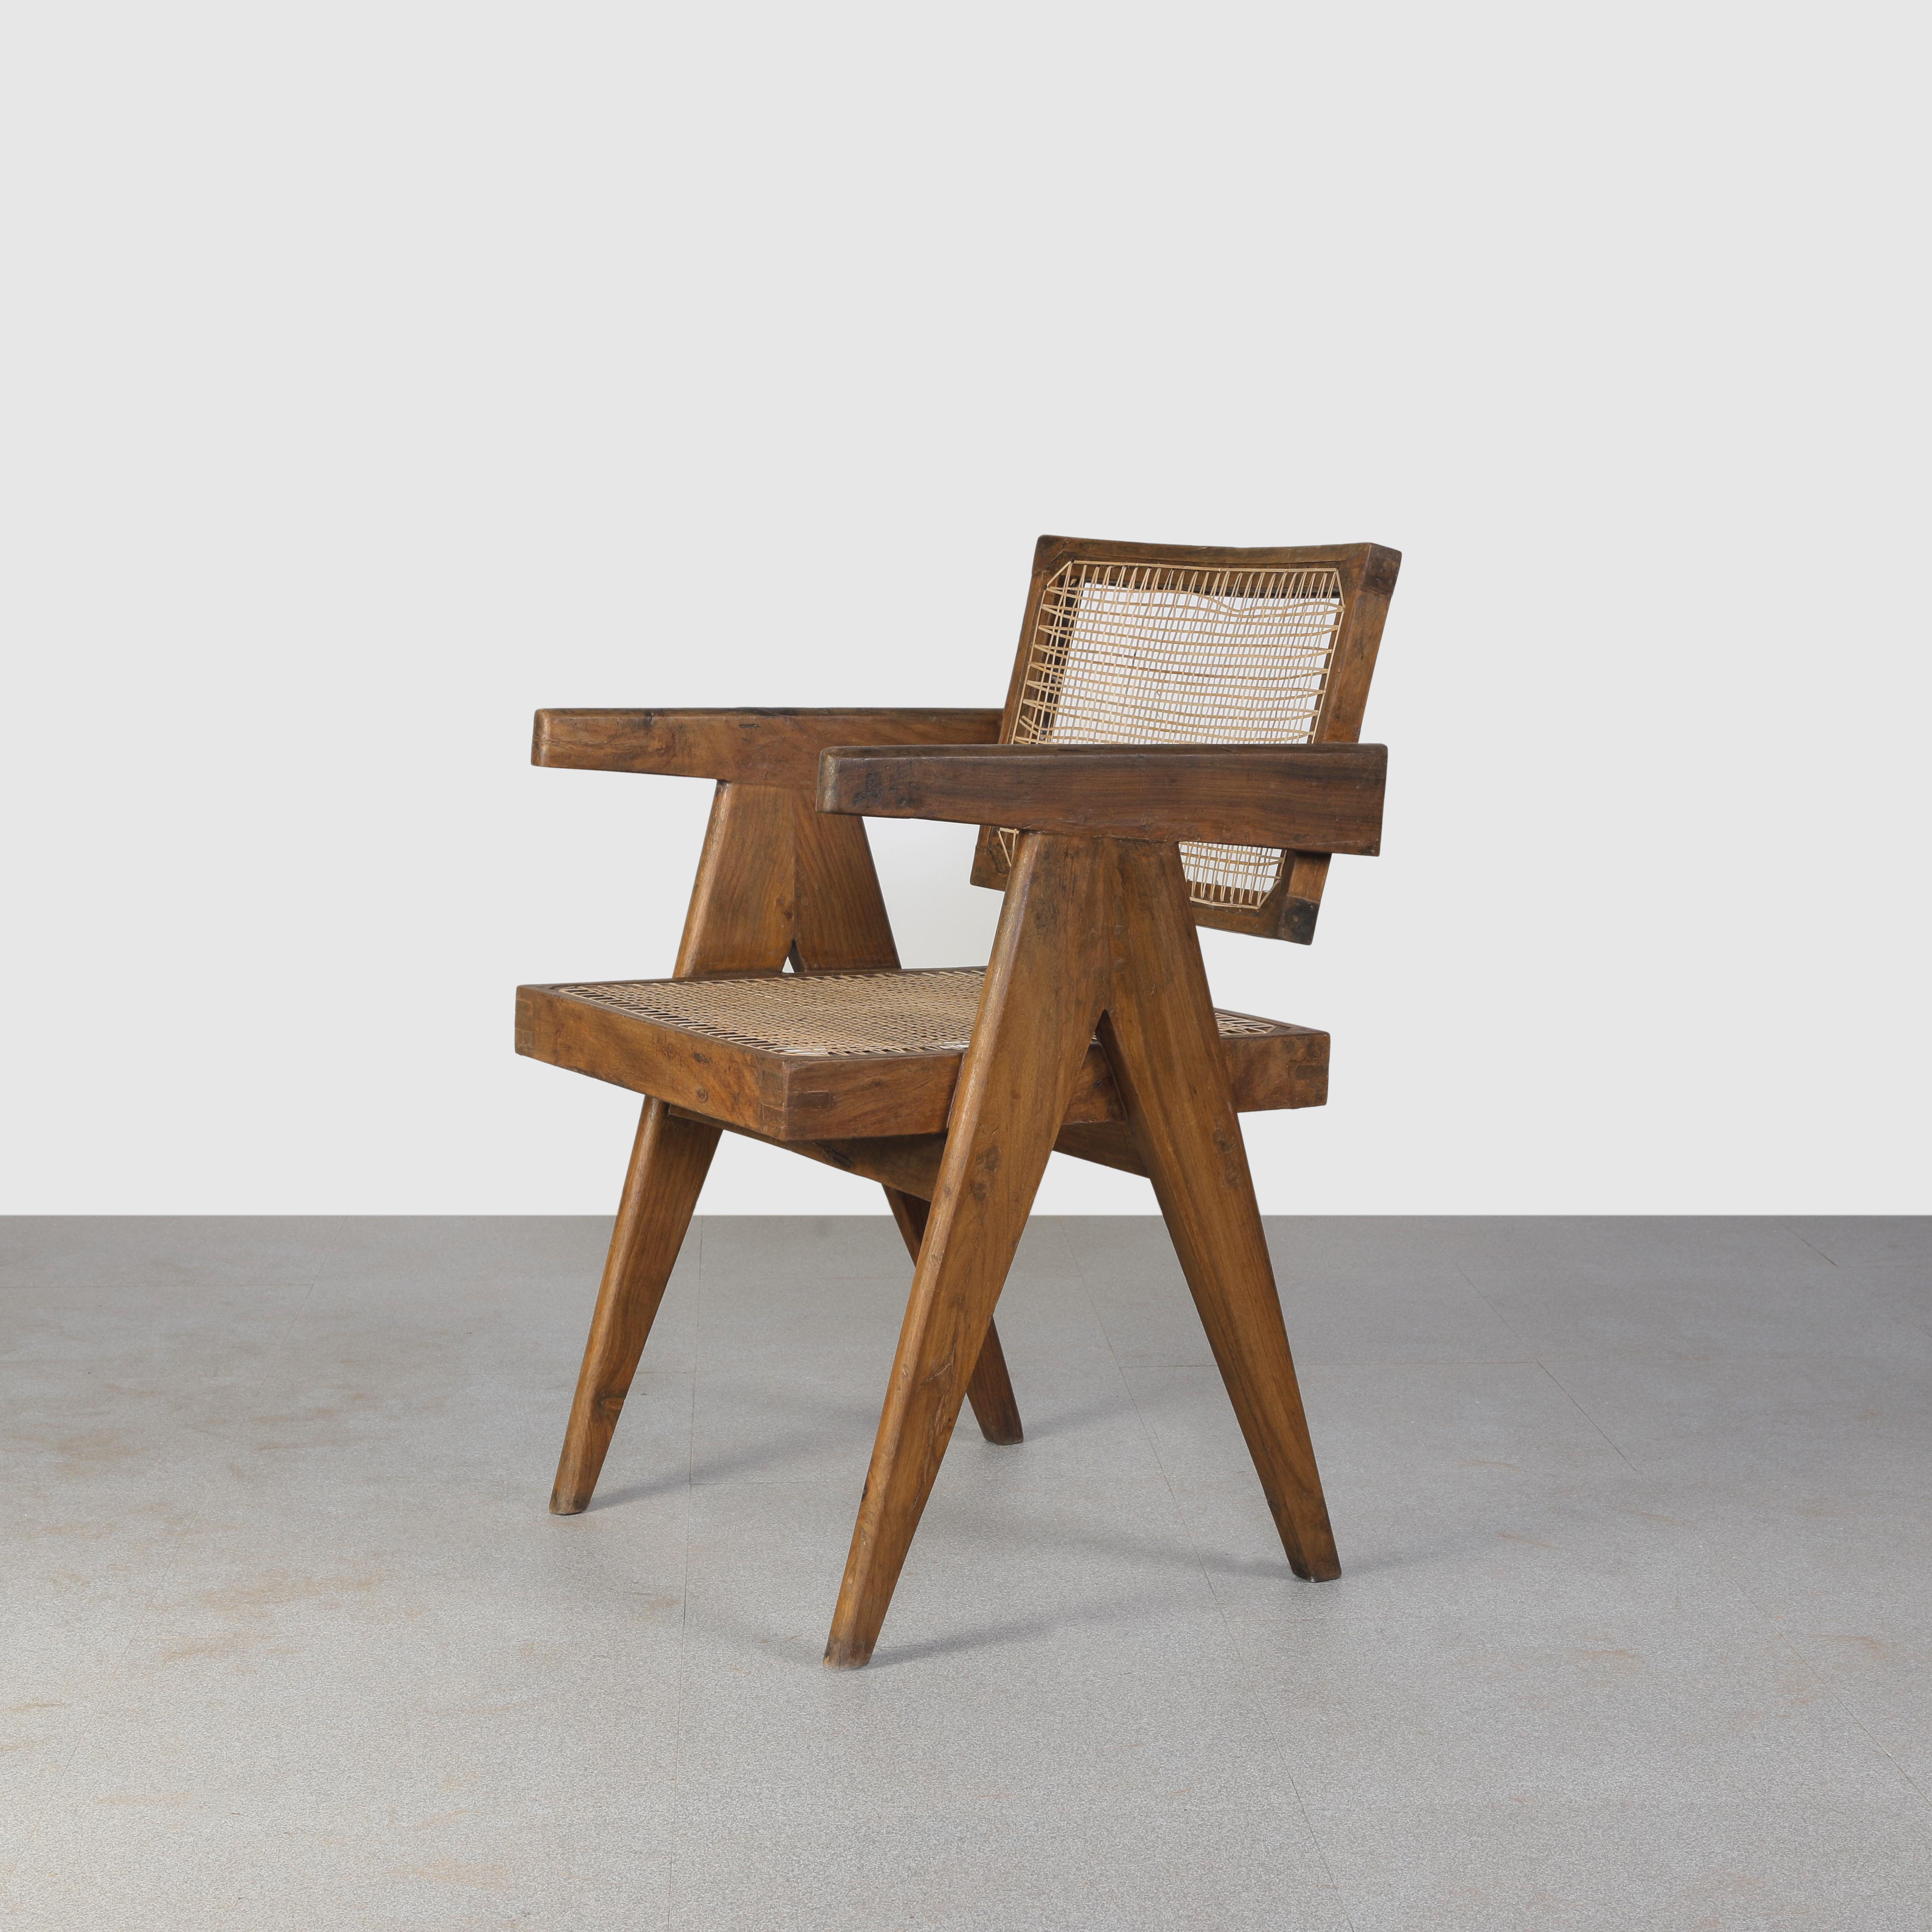 Cette chaise est une pièce emblématique du design. Brut dans sa simplicité, il présente une matière légèrement patinée. Il est assez rugueux et a une couleur magnifique. Nous ne les restaurons pas trop. Nous conservons donc autant que possible les